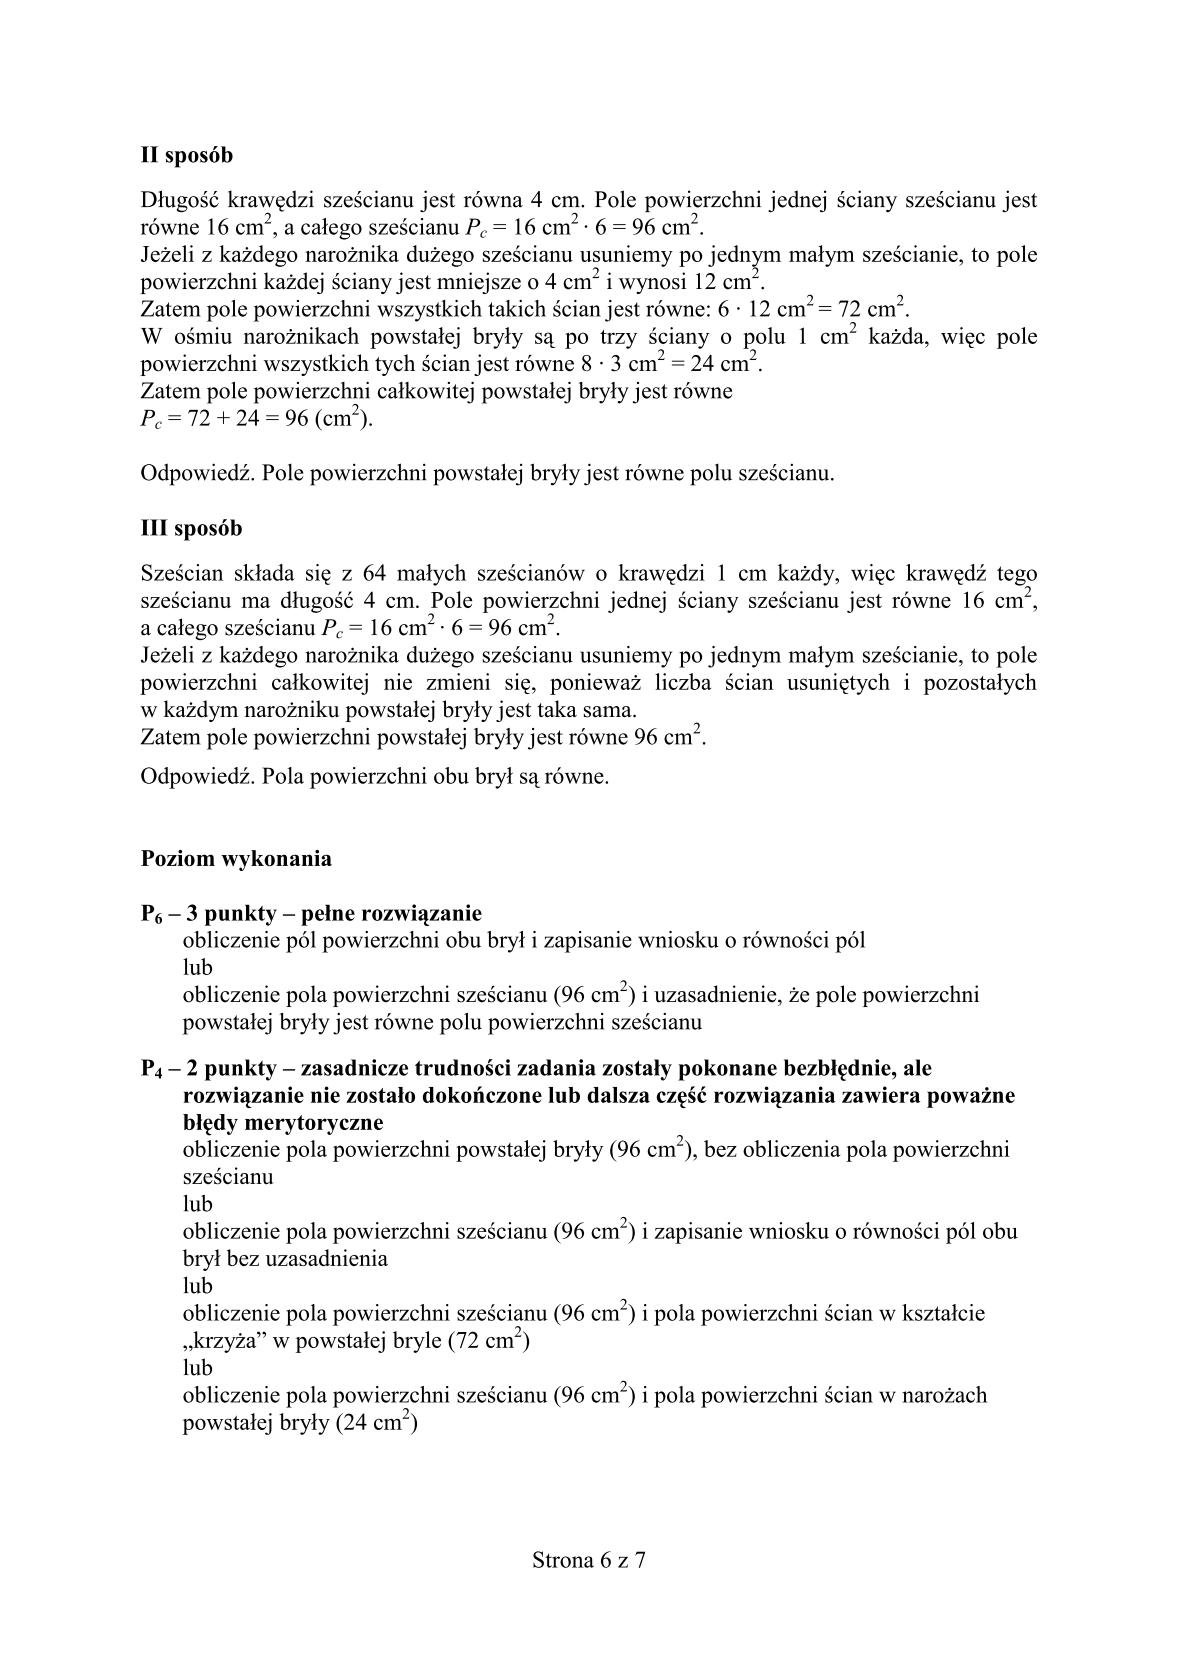 odpowiedzi-matematyka-egzamin-gimnazjalny-24.04.2014-str.6